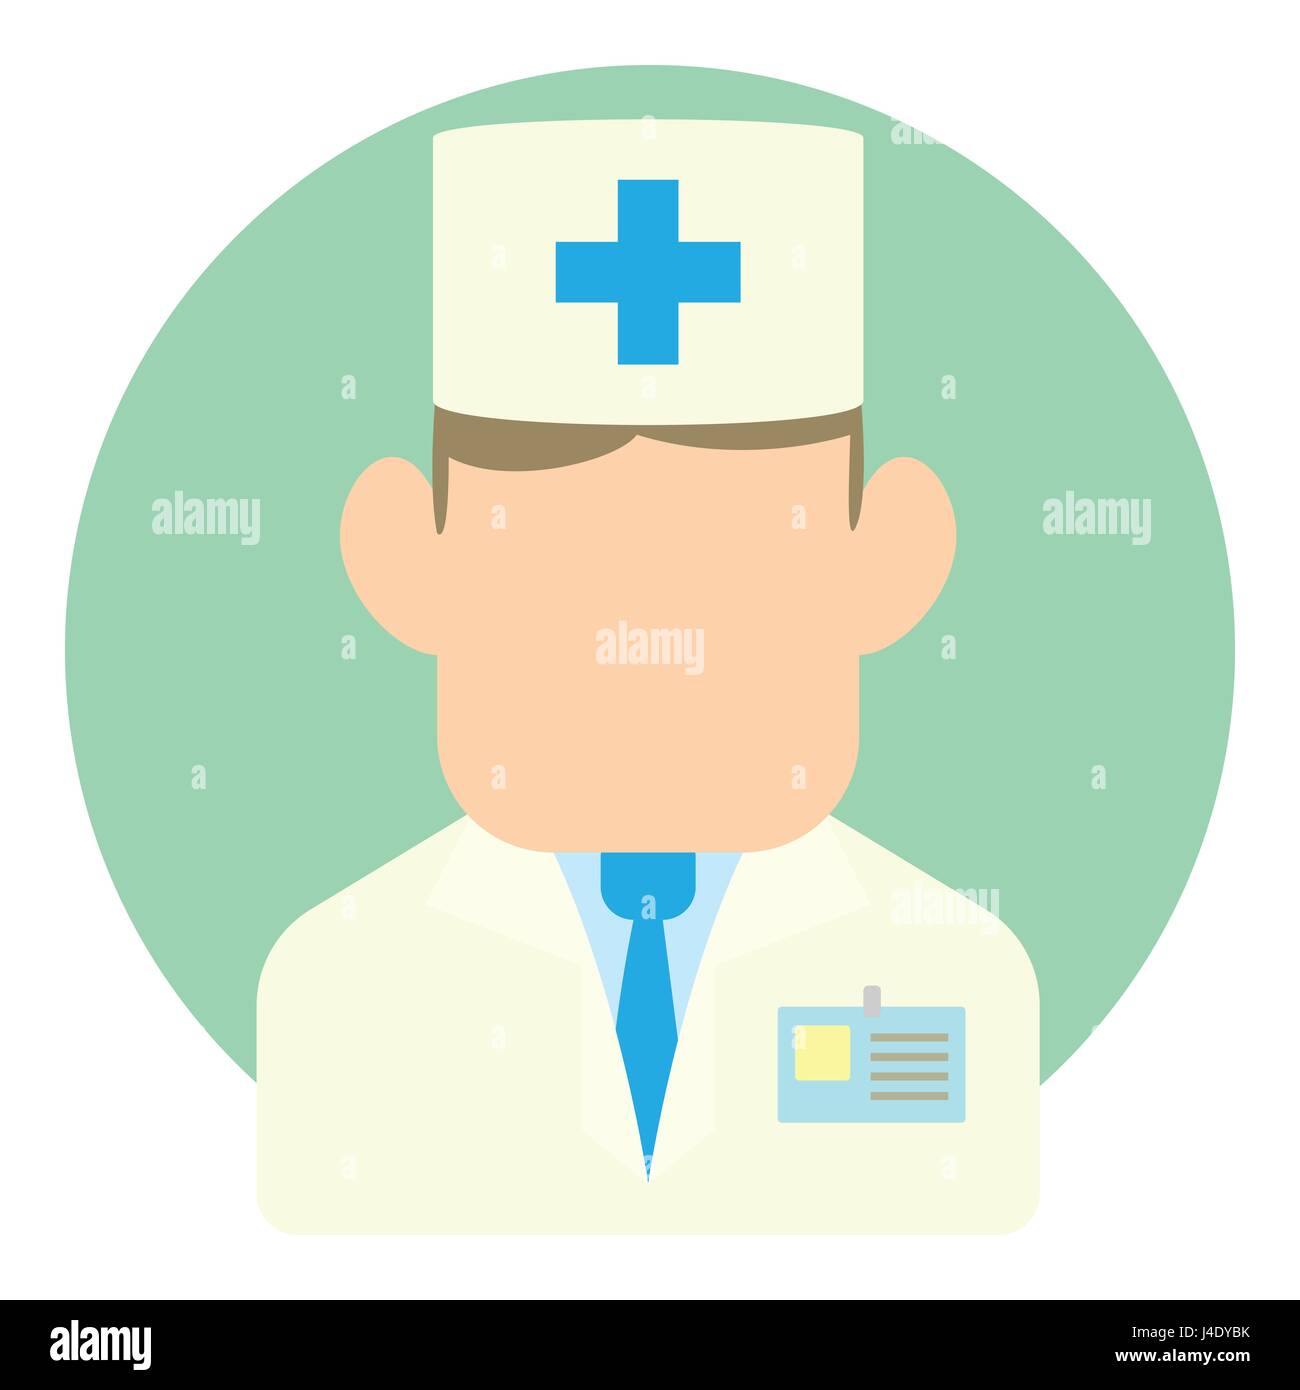 Ilustração Do Png Do ícone De Clipart De Avatar Paramédico Para O Serviço  Médico De Medicina Foto de Stock - Ilustração de cara, médico: 269804308